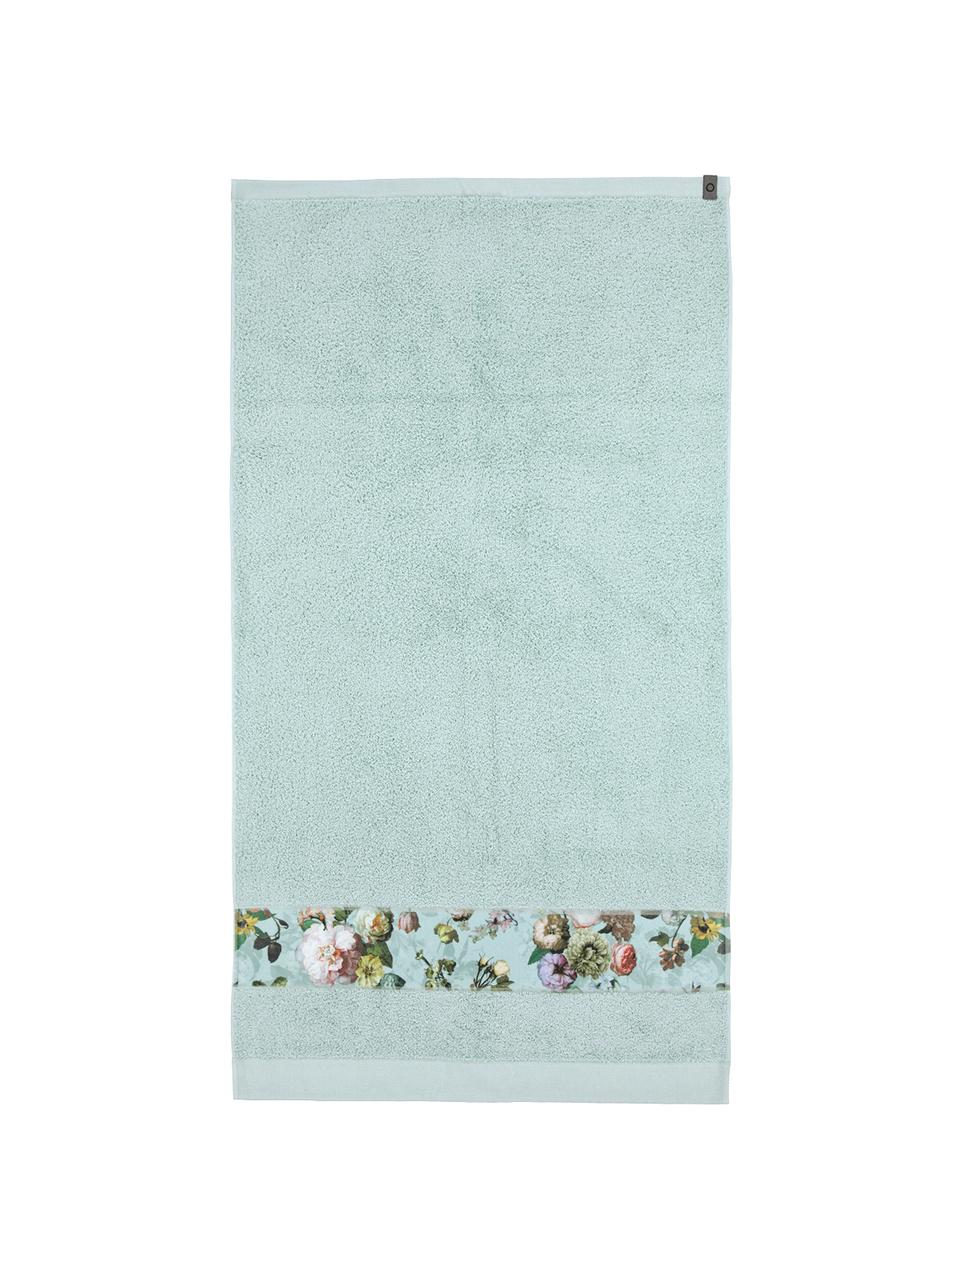 Ręcznik Fleur, różne rozmiary, 97% bawełna, 3% poliester, Zielony miętowy, wielobarwny, Ręcznik do rąk, S 55 x D 100 cm